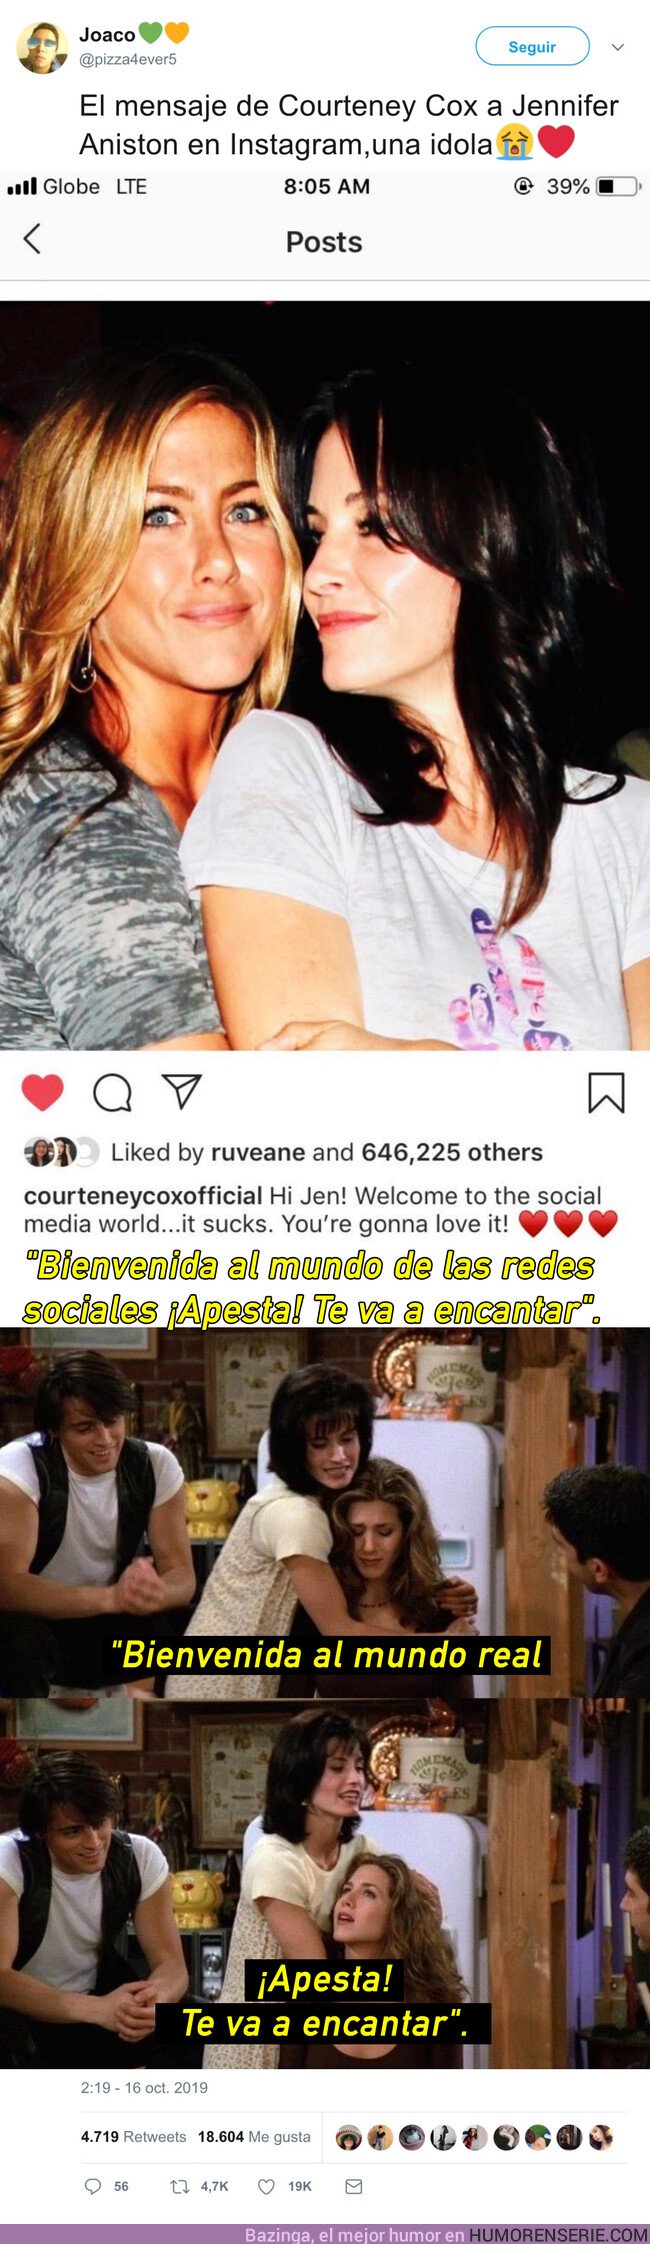 43126 - El mensaje de Courteney Cox a Jennifer Aniston que hace llorar a todos los fans de Friends